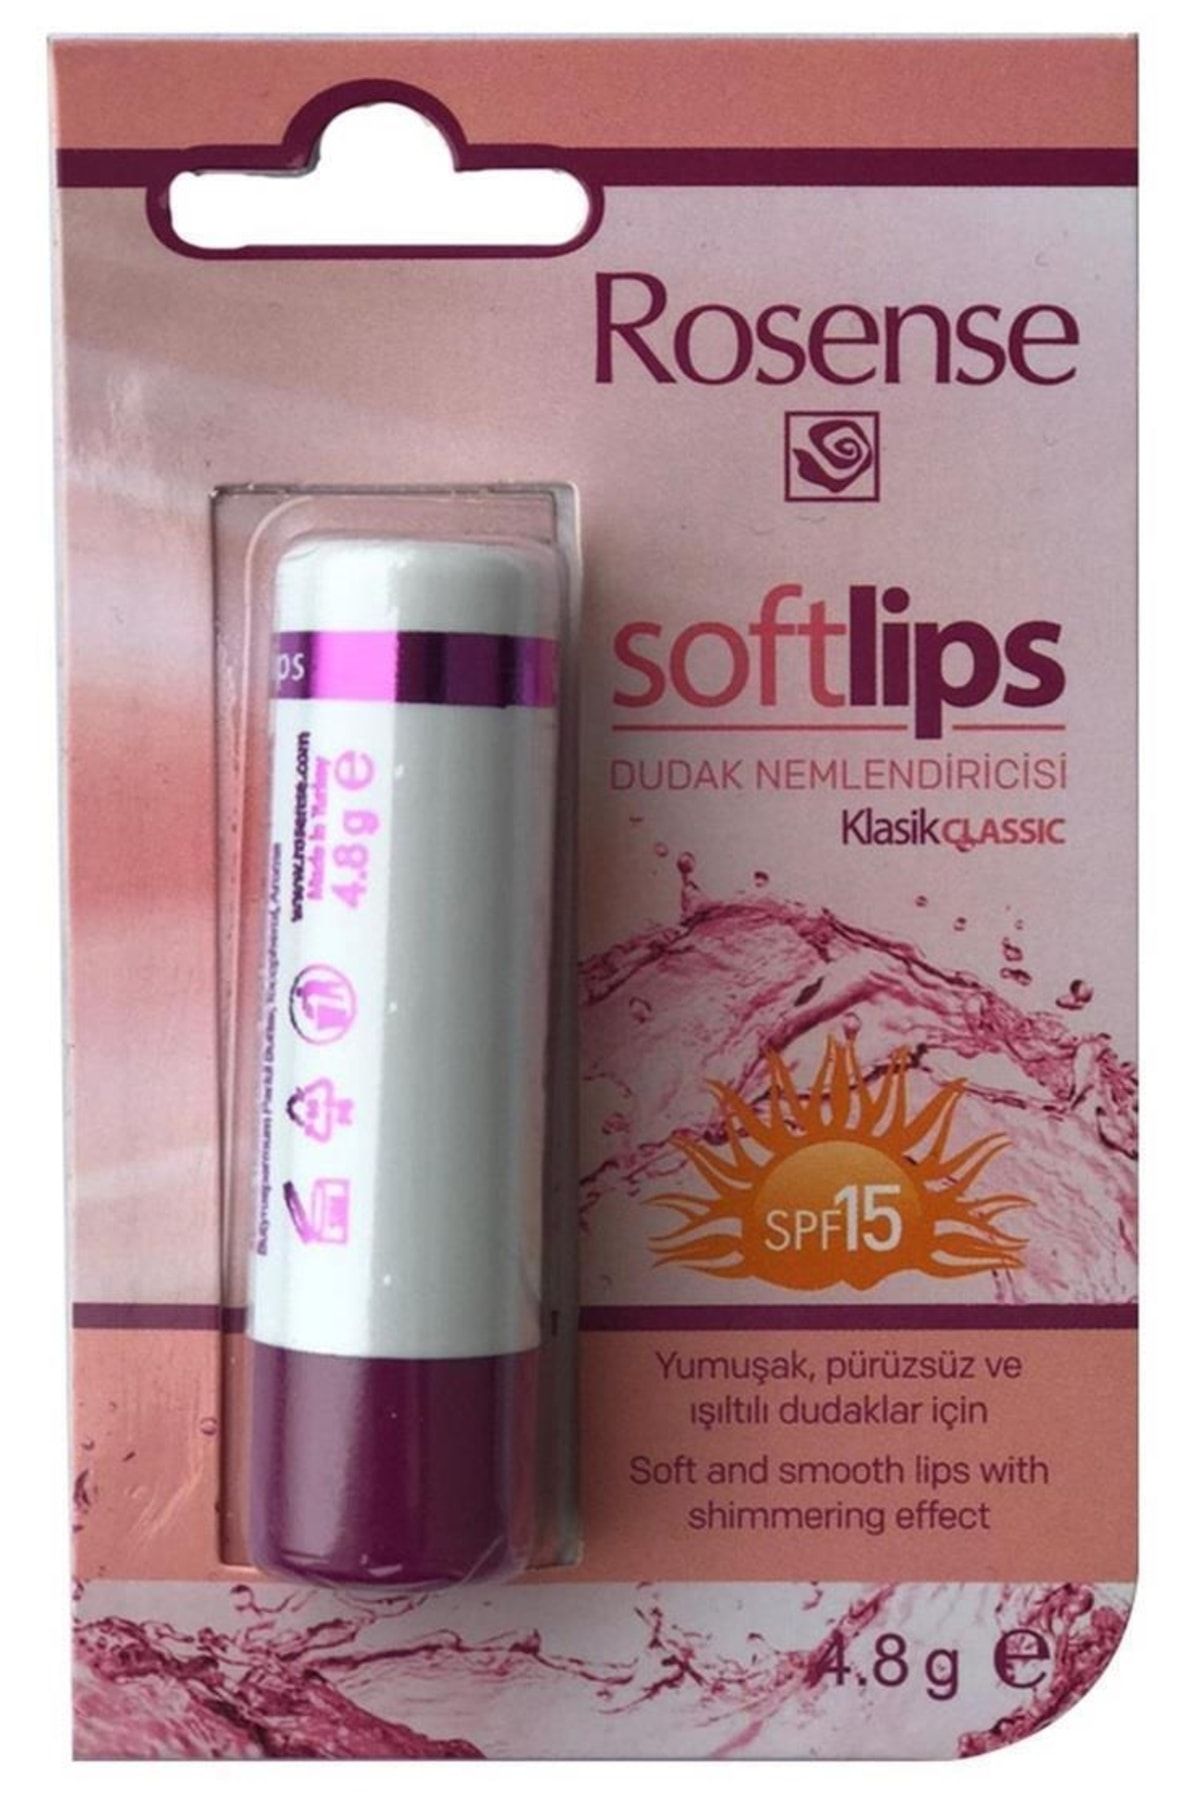 Rosense Dudak Nemlendirici - Soft Lips Stick Spf 15 4.8 G